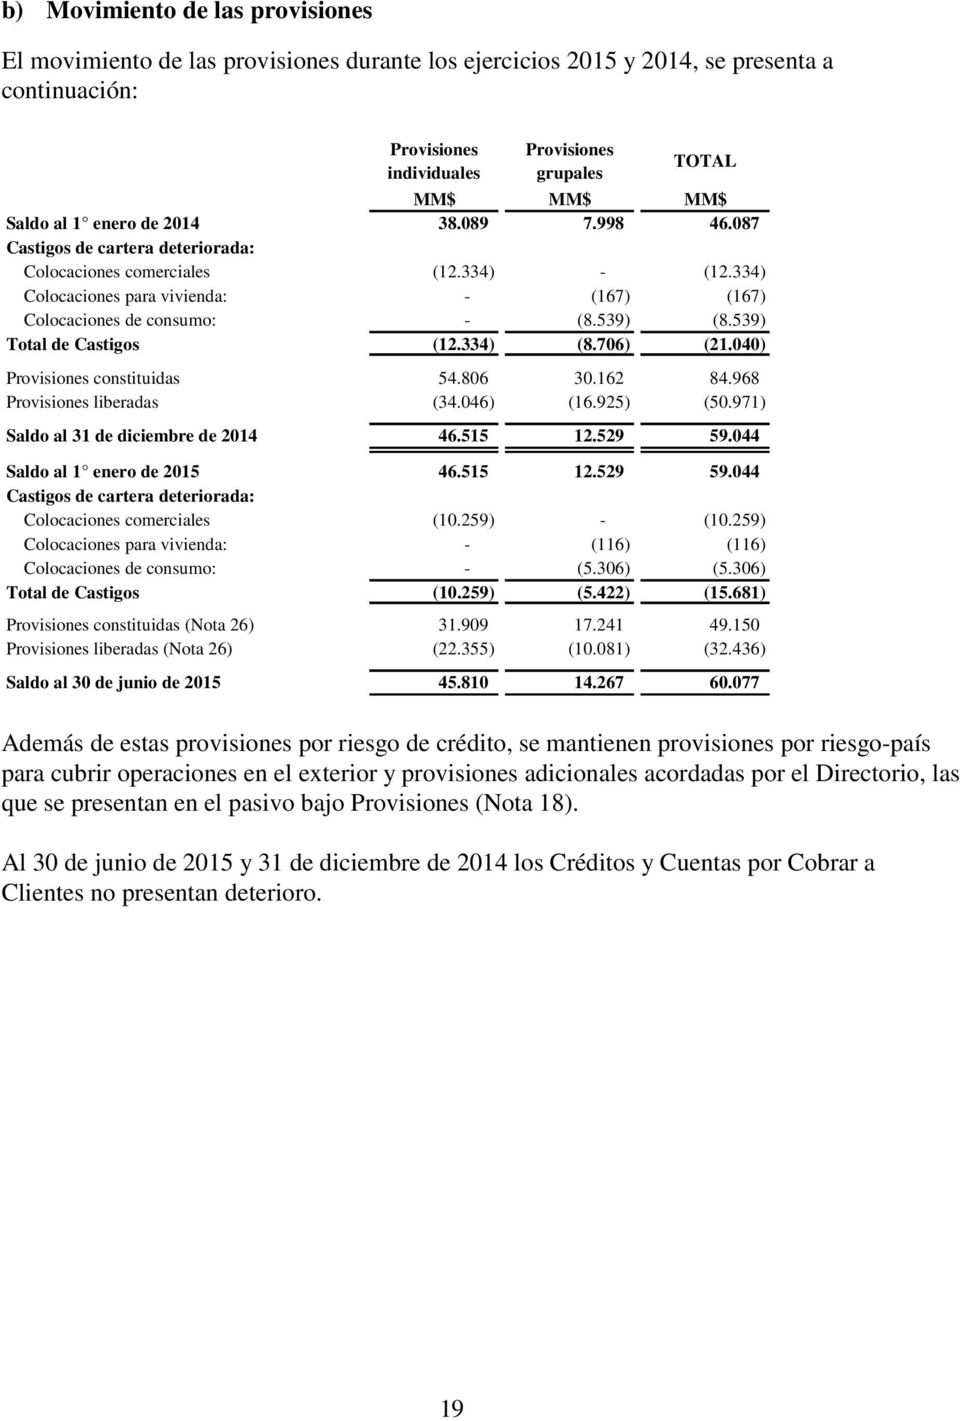 539) Tot de Castigos (12.334) (8.706) (21.040) Provisiones constituidas 54.806 30.162 84.968 Provisiones liberadas (34.046) (16.925) (50.971) Sdo de 2014 46.515 12.529 59.044 Sdo 1 enero de 2015 46.